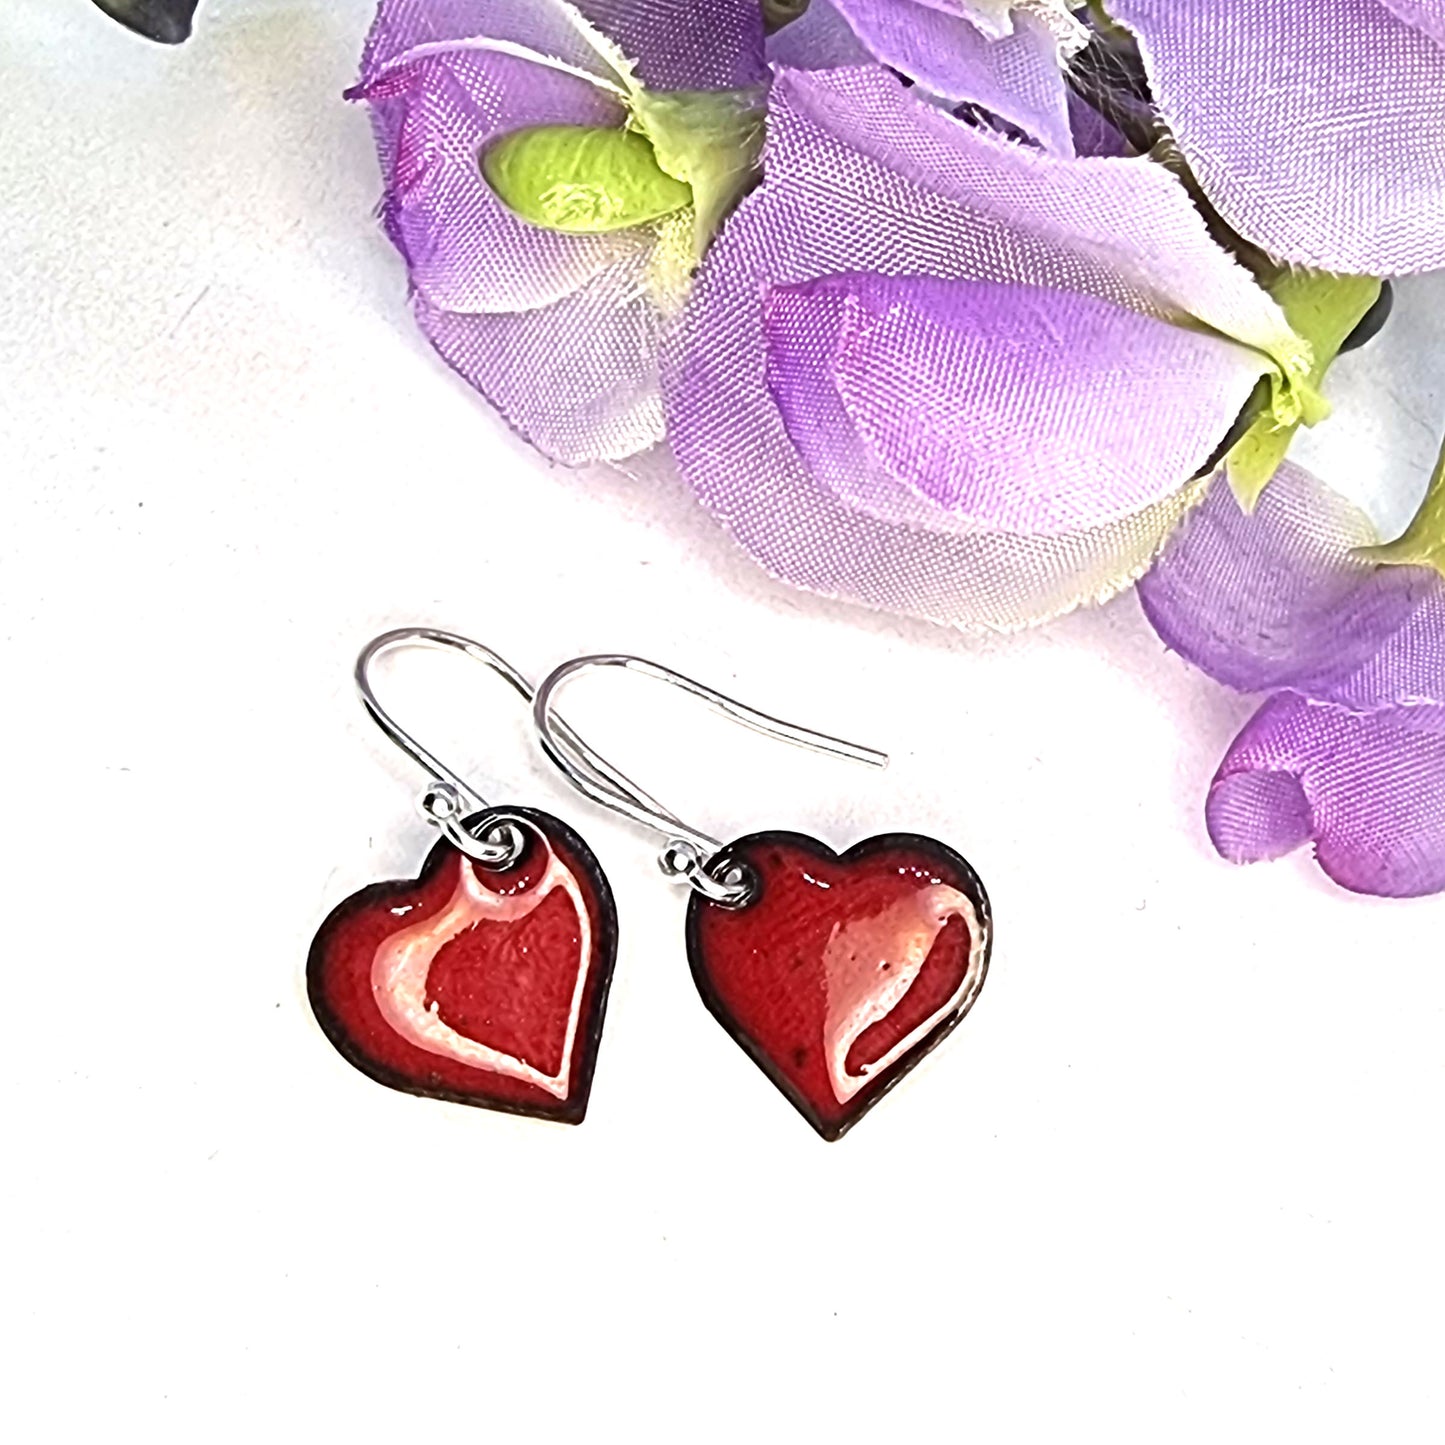 Red enamel heart drop earrings with flowers